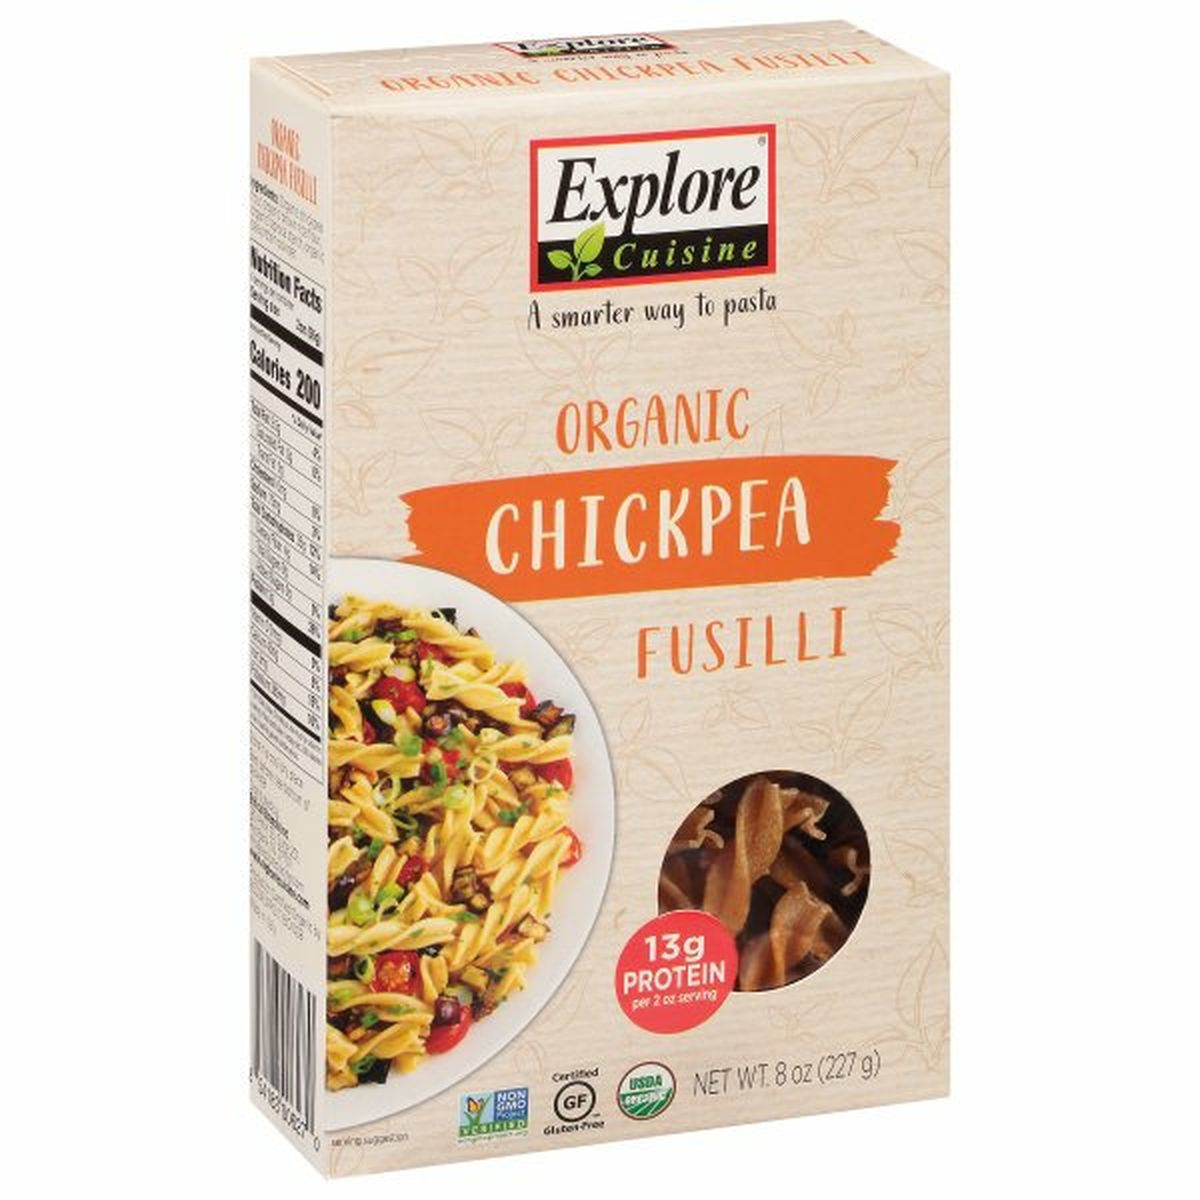 Calories in Explore Cuisine Fusilli, Organic, Chickpea